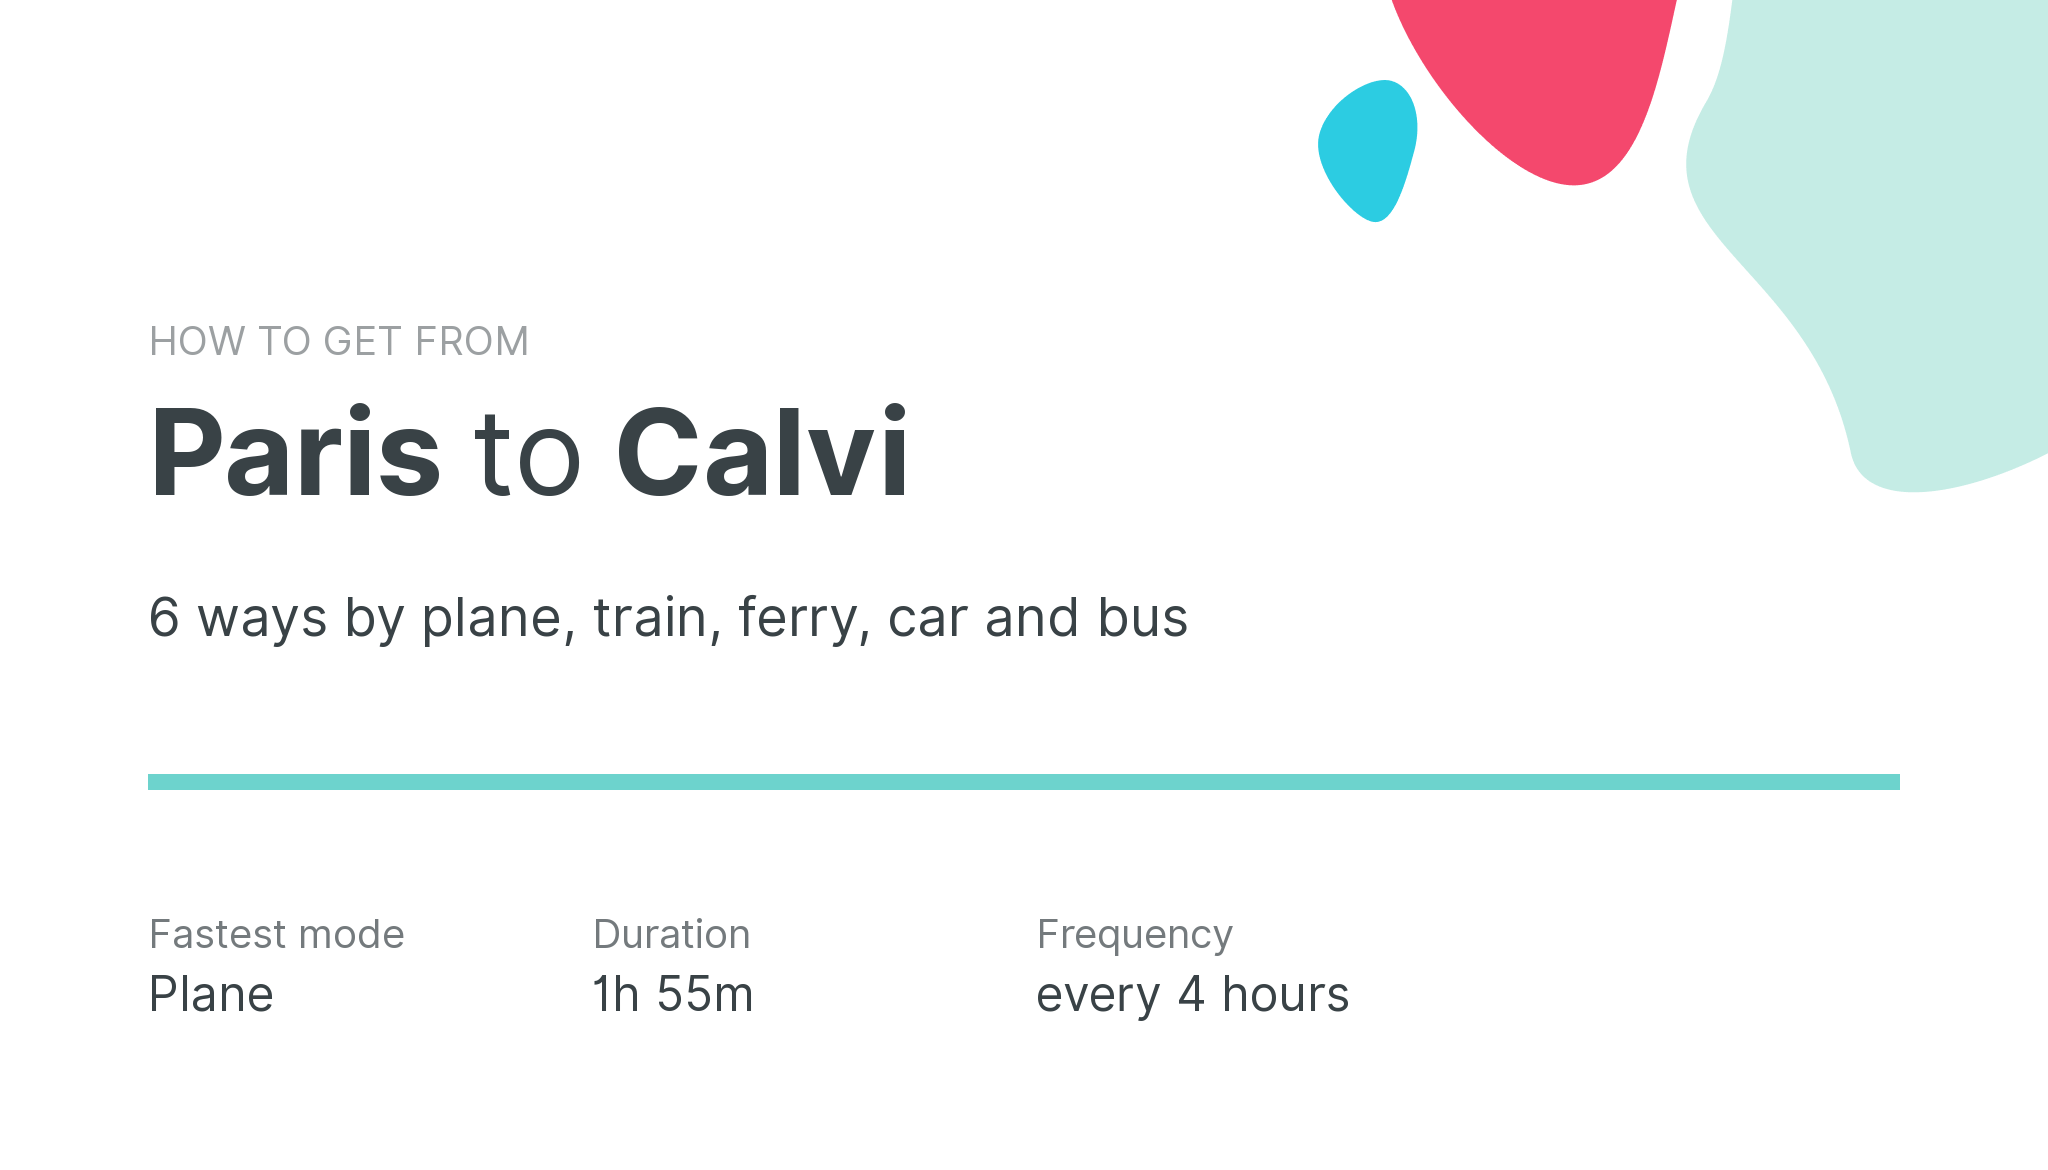 How do I get from Paris to Calvi